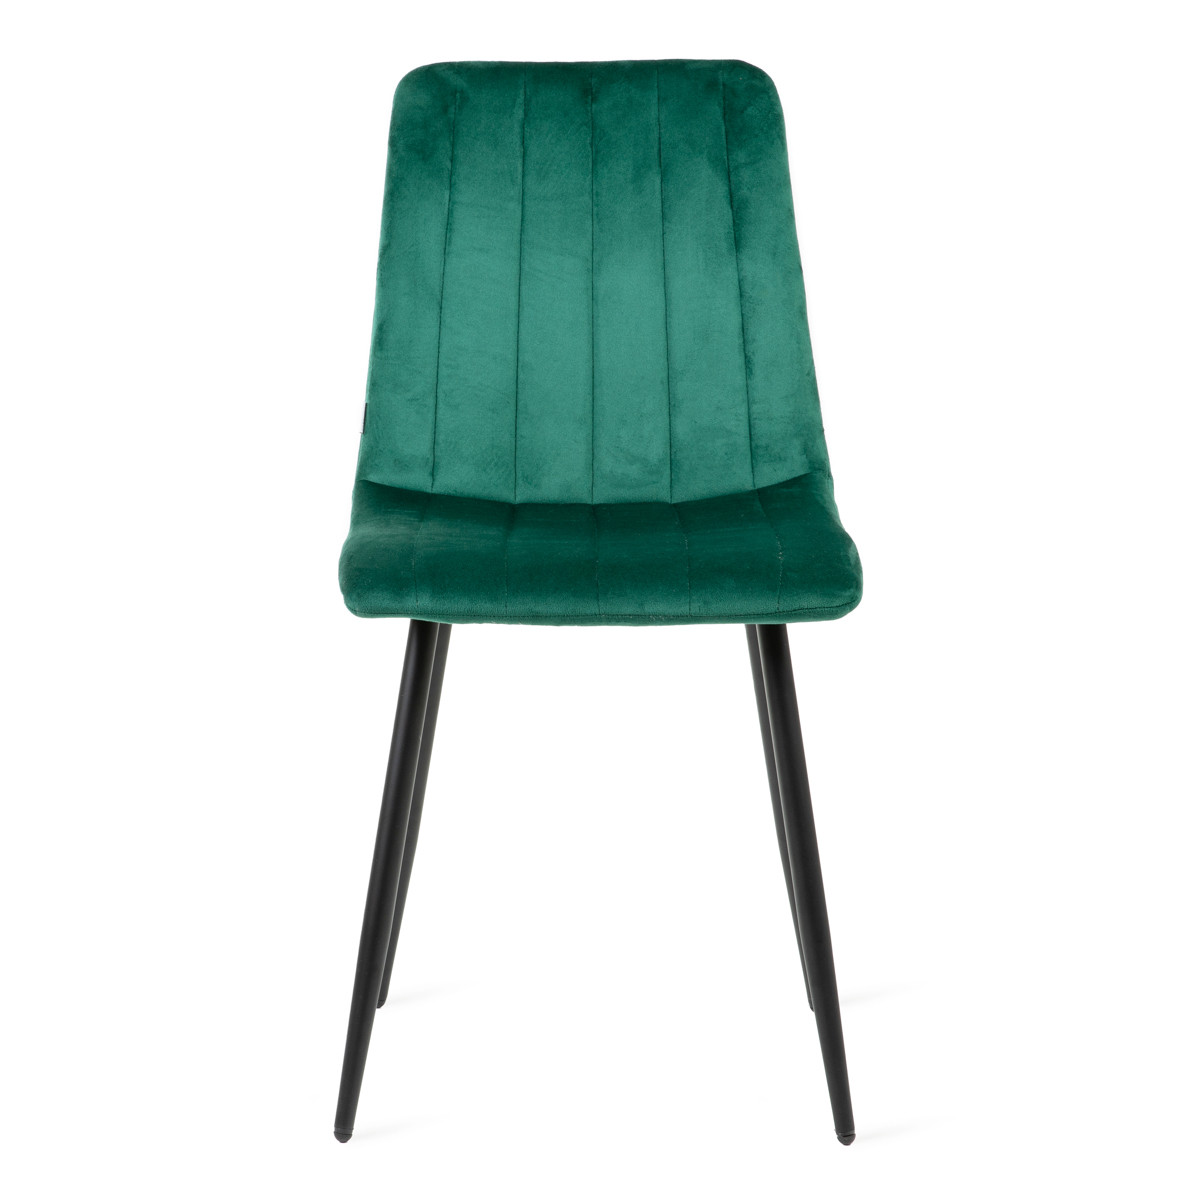 Židle GOLICK sametová zelená ALL 822136